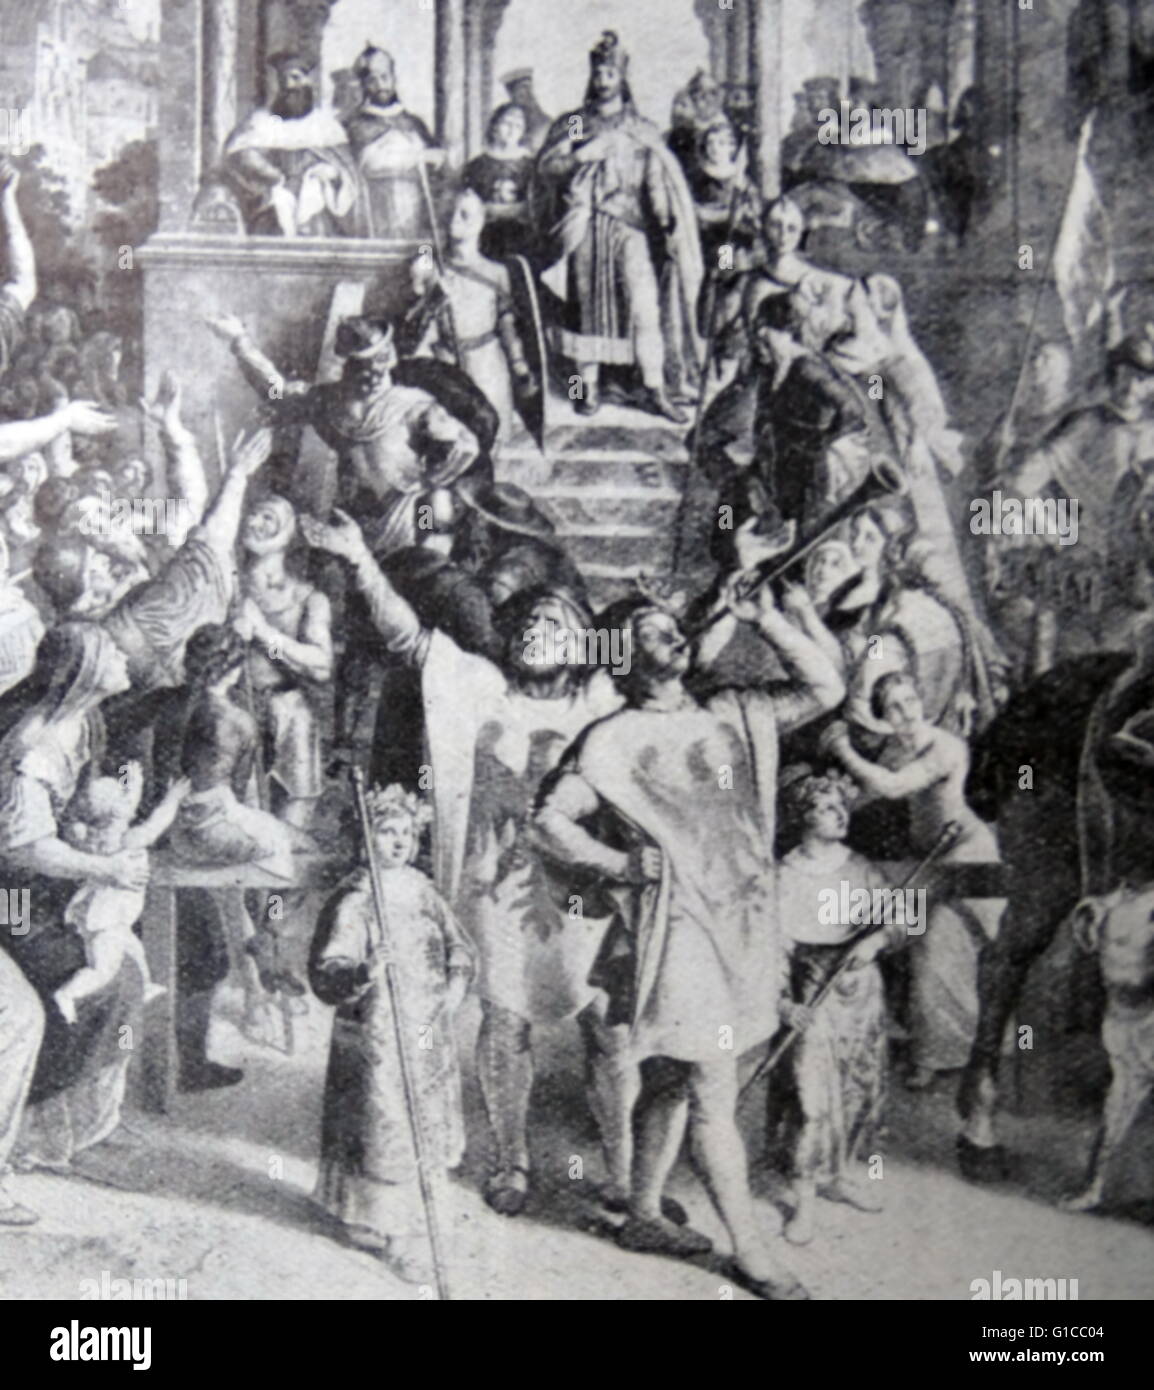 Gravur, Darstellung der Wahl Friedrichs i., Kaiser des Heiligen Römischen Reiches (1122-1190) wurde er König von Deutschland in Frankfurt gewählt. Vom 12. Jahrhundert Stockfoto